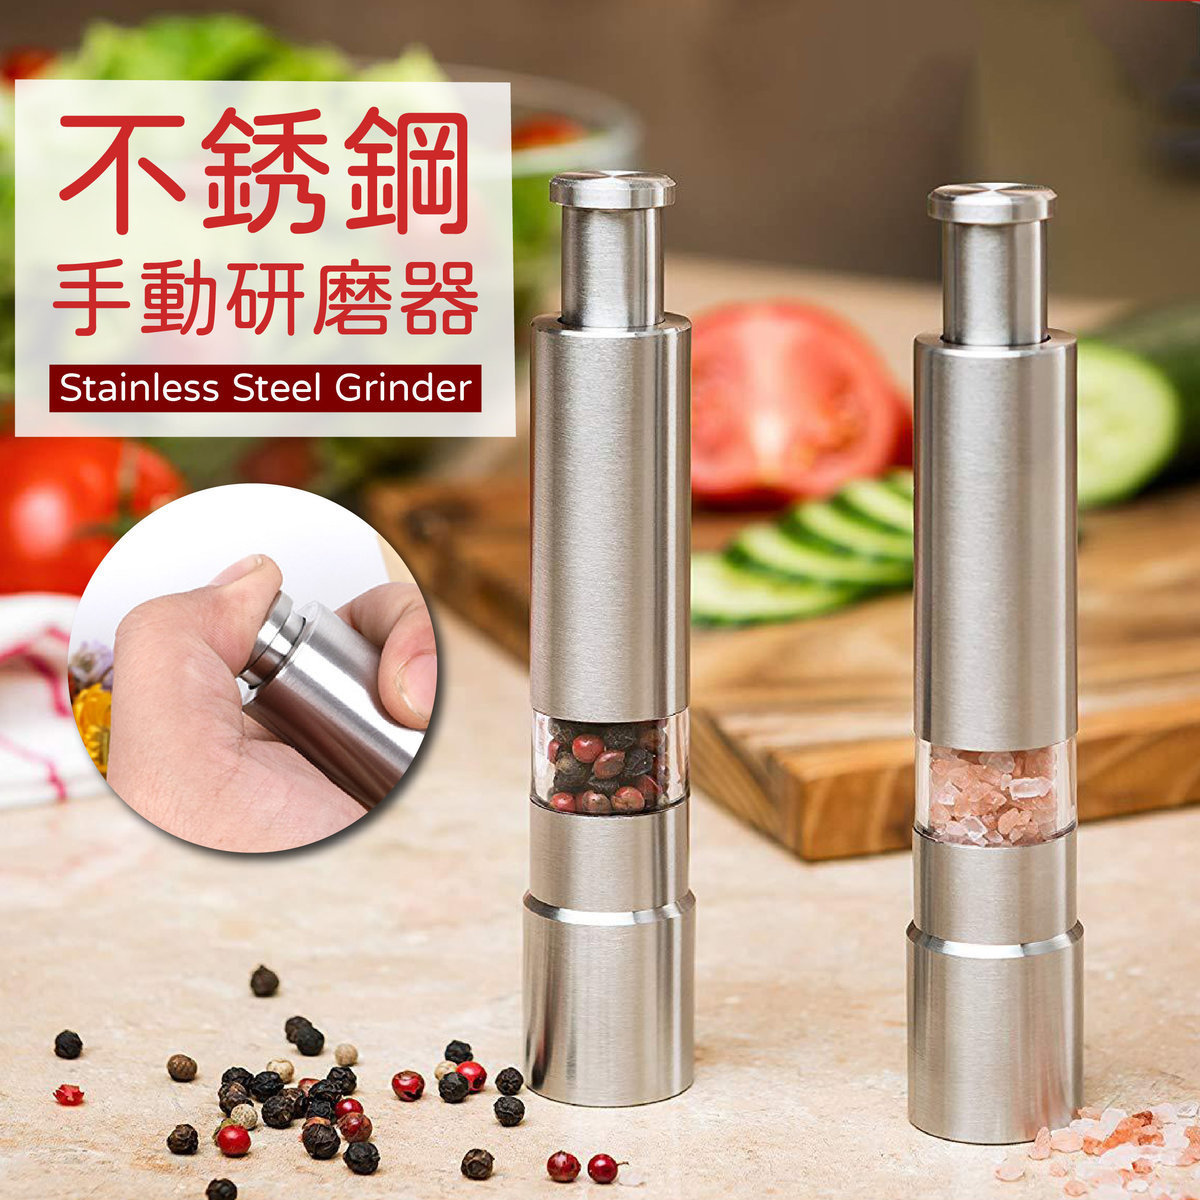 Stainless Steel Salt & Pepper Grinder – Modern Design Single Handed Operation